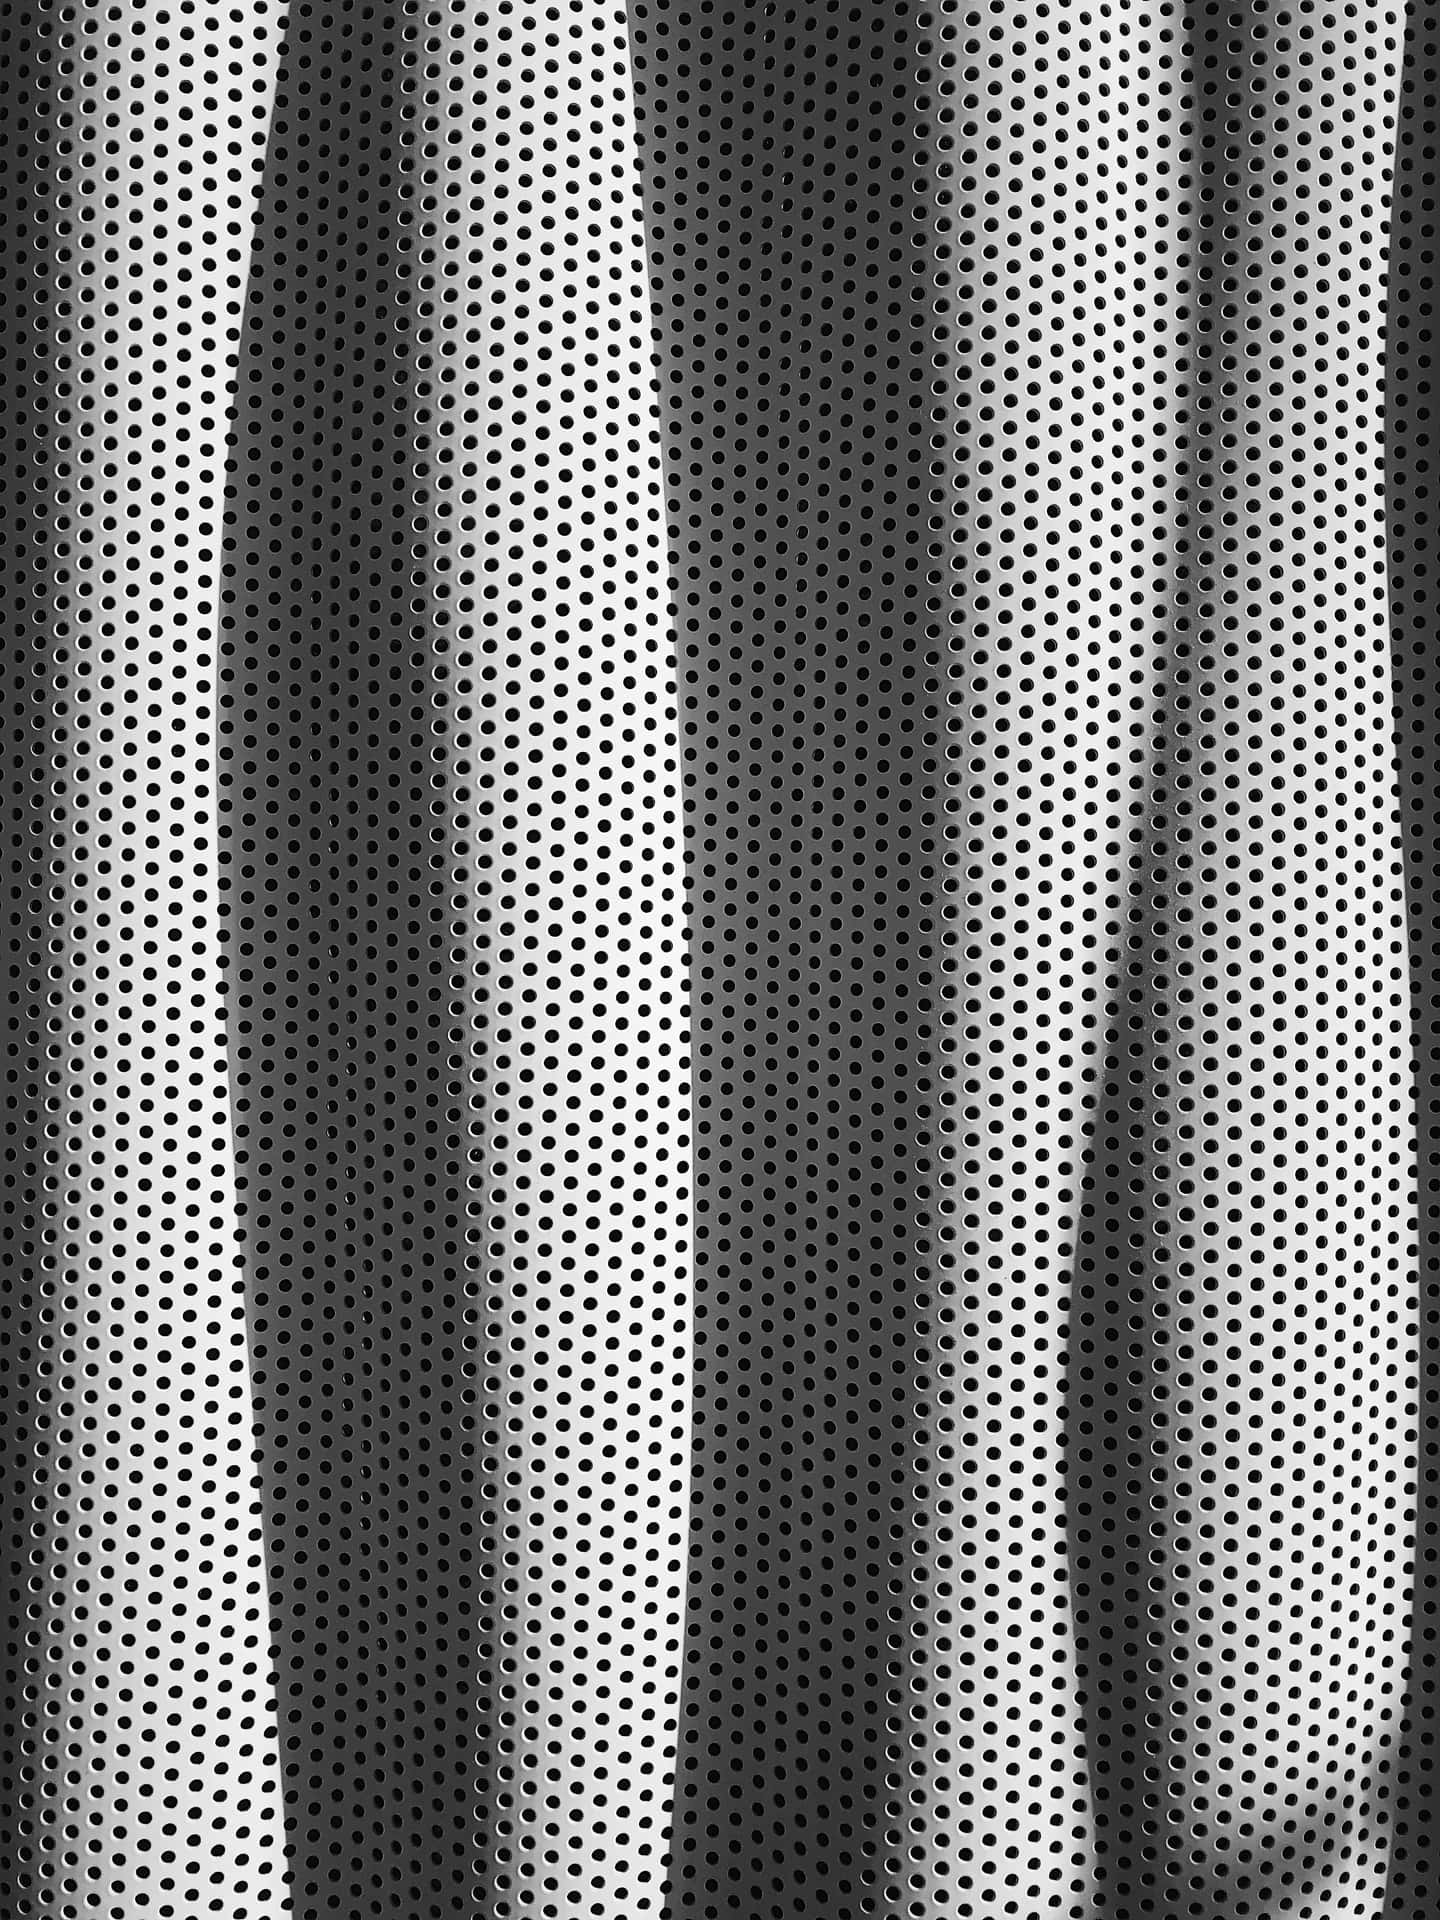 Ensvartvit Bild Av Ett Metallnät Som Bakgrundsbild Till Datorn Eller Mobilen. Wallpaper